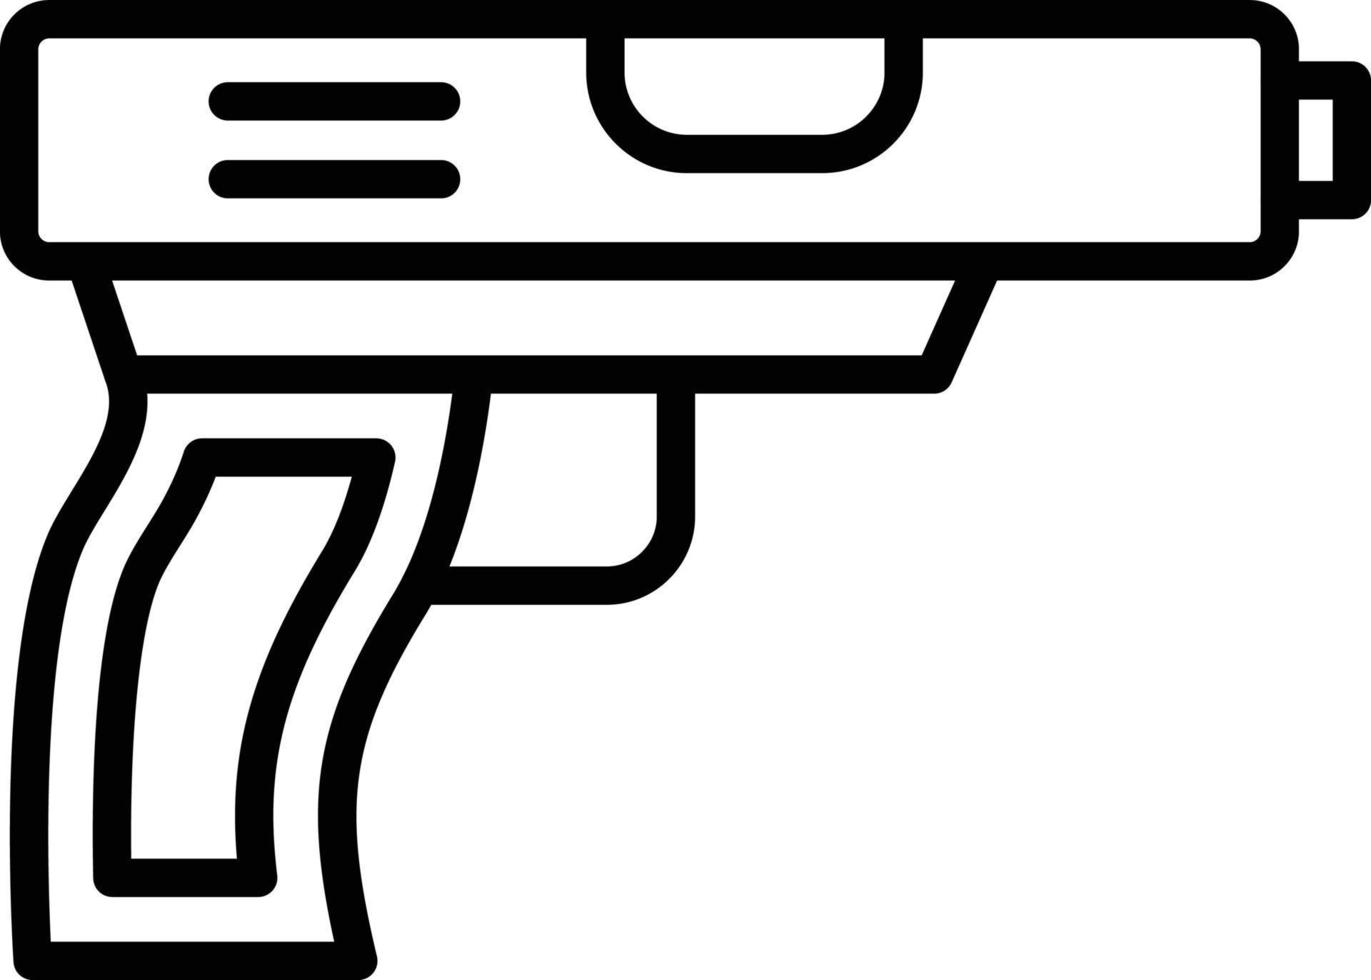 Gun Icon Style vector